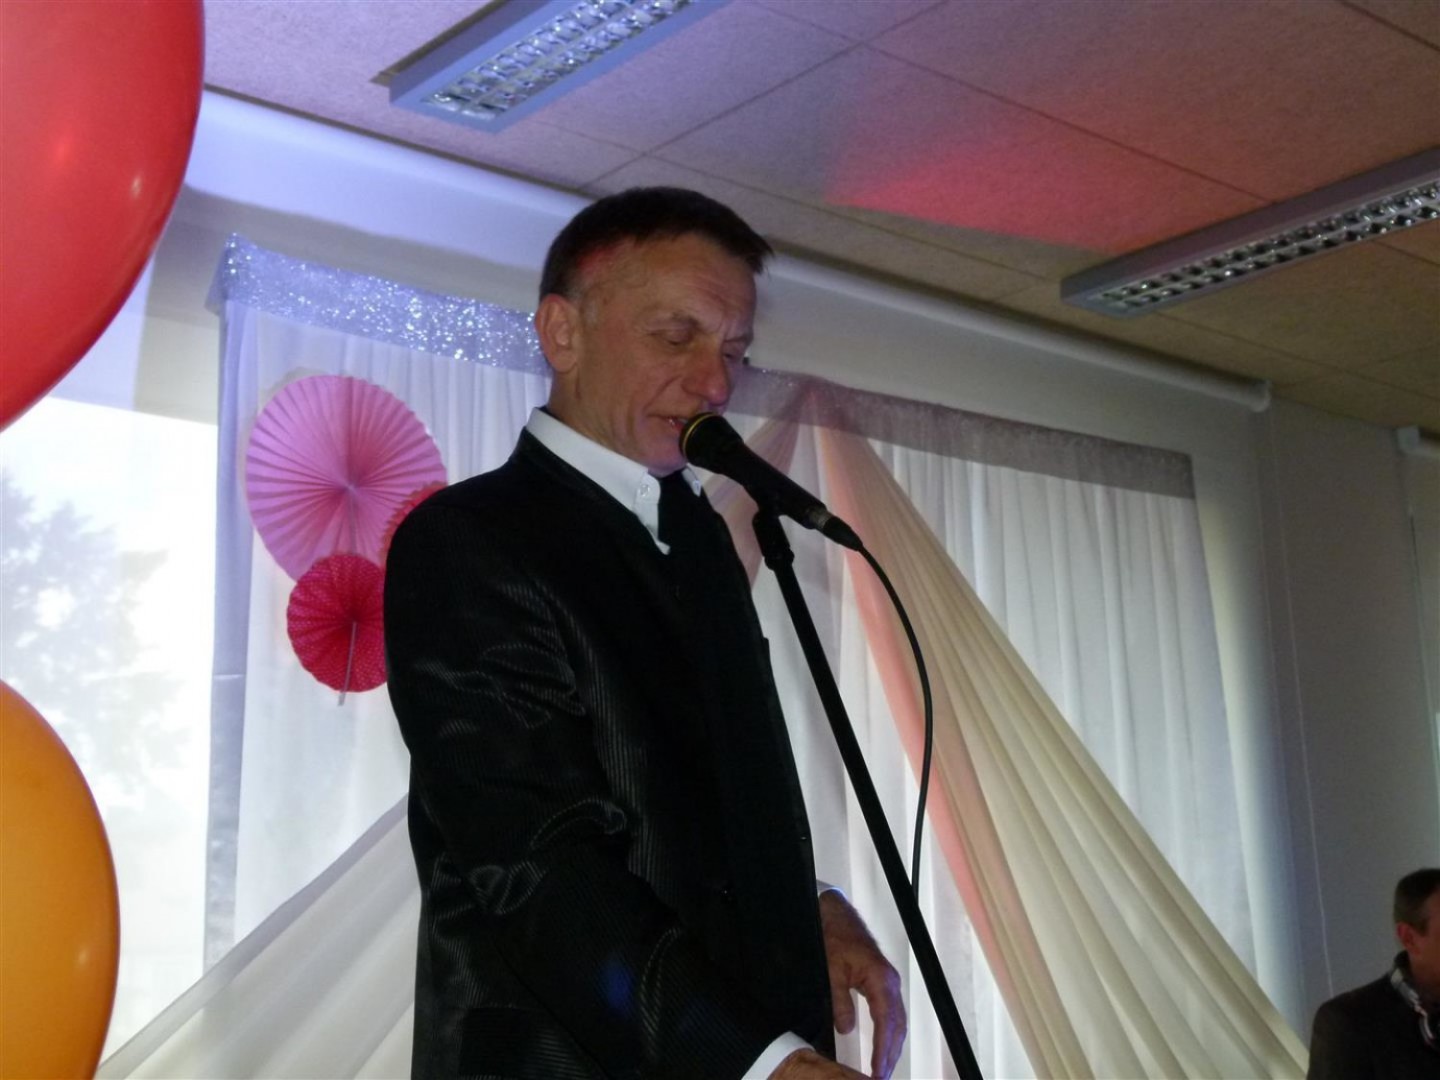 Na zdjęciu widać aktora Krzysztofa Tyńca w garniturze, śpiewającego do mikrofonu